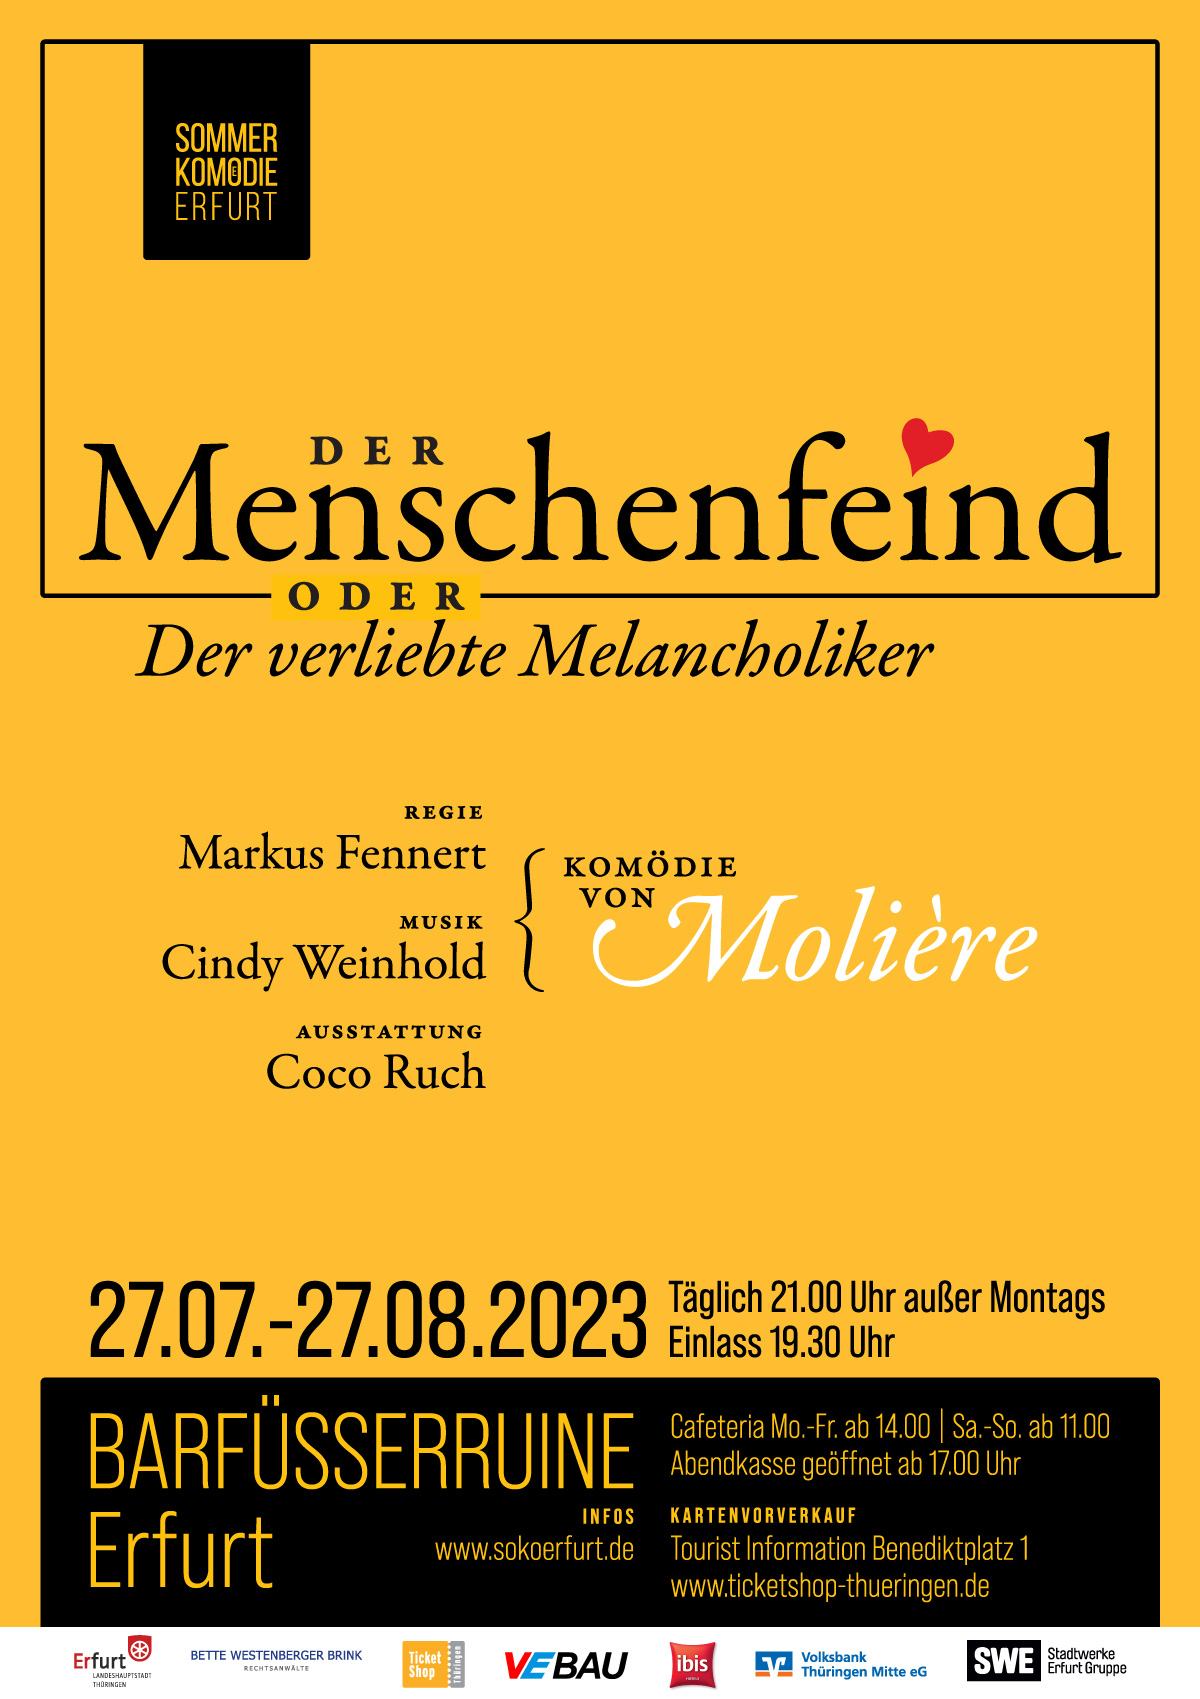 Plakat: Der Menschenfeind oder: Der verliebte Melancholiker. Vom 27.07. bis 27.08. 2023 in der Barfüsserruine Erfurt